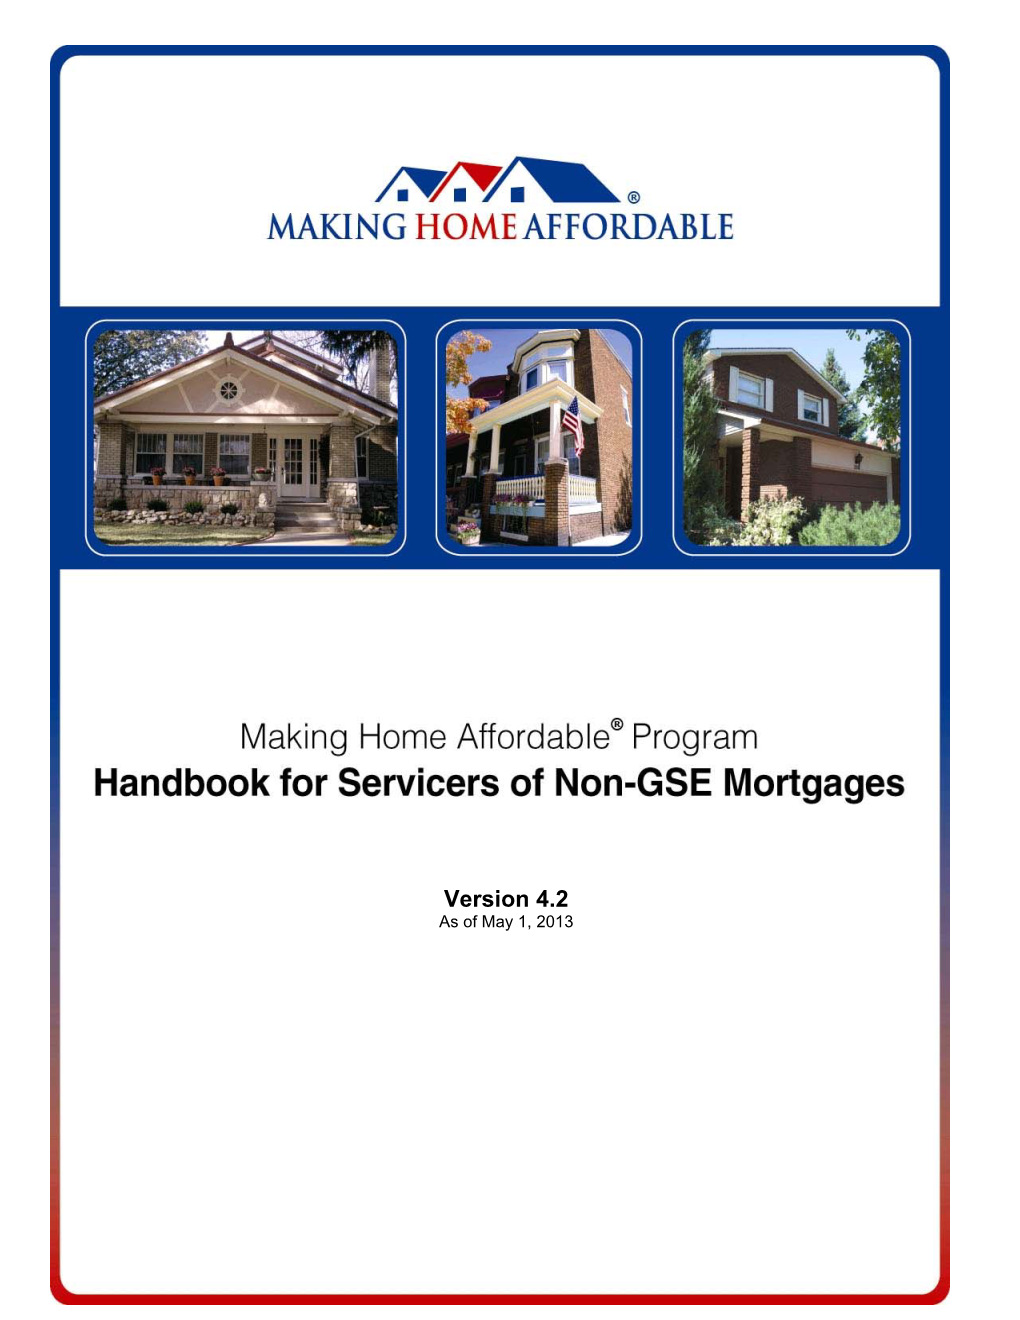 Making Home Affordable Handbook V4.2